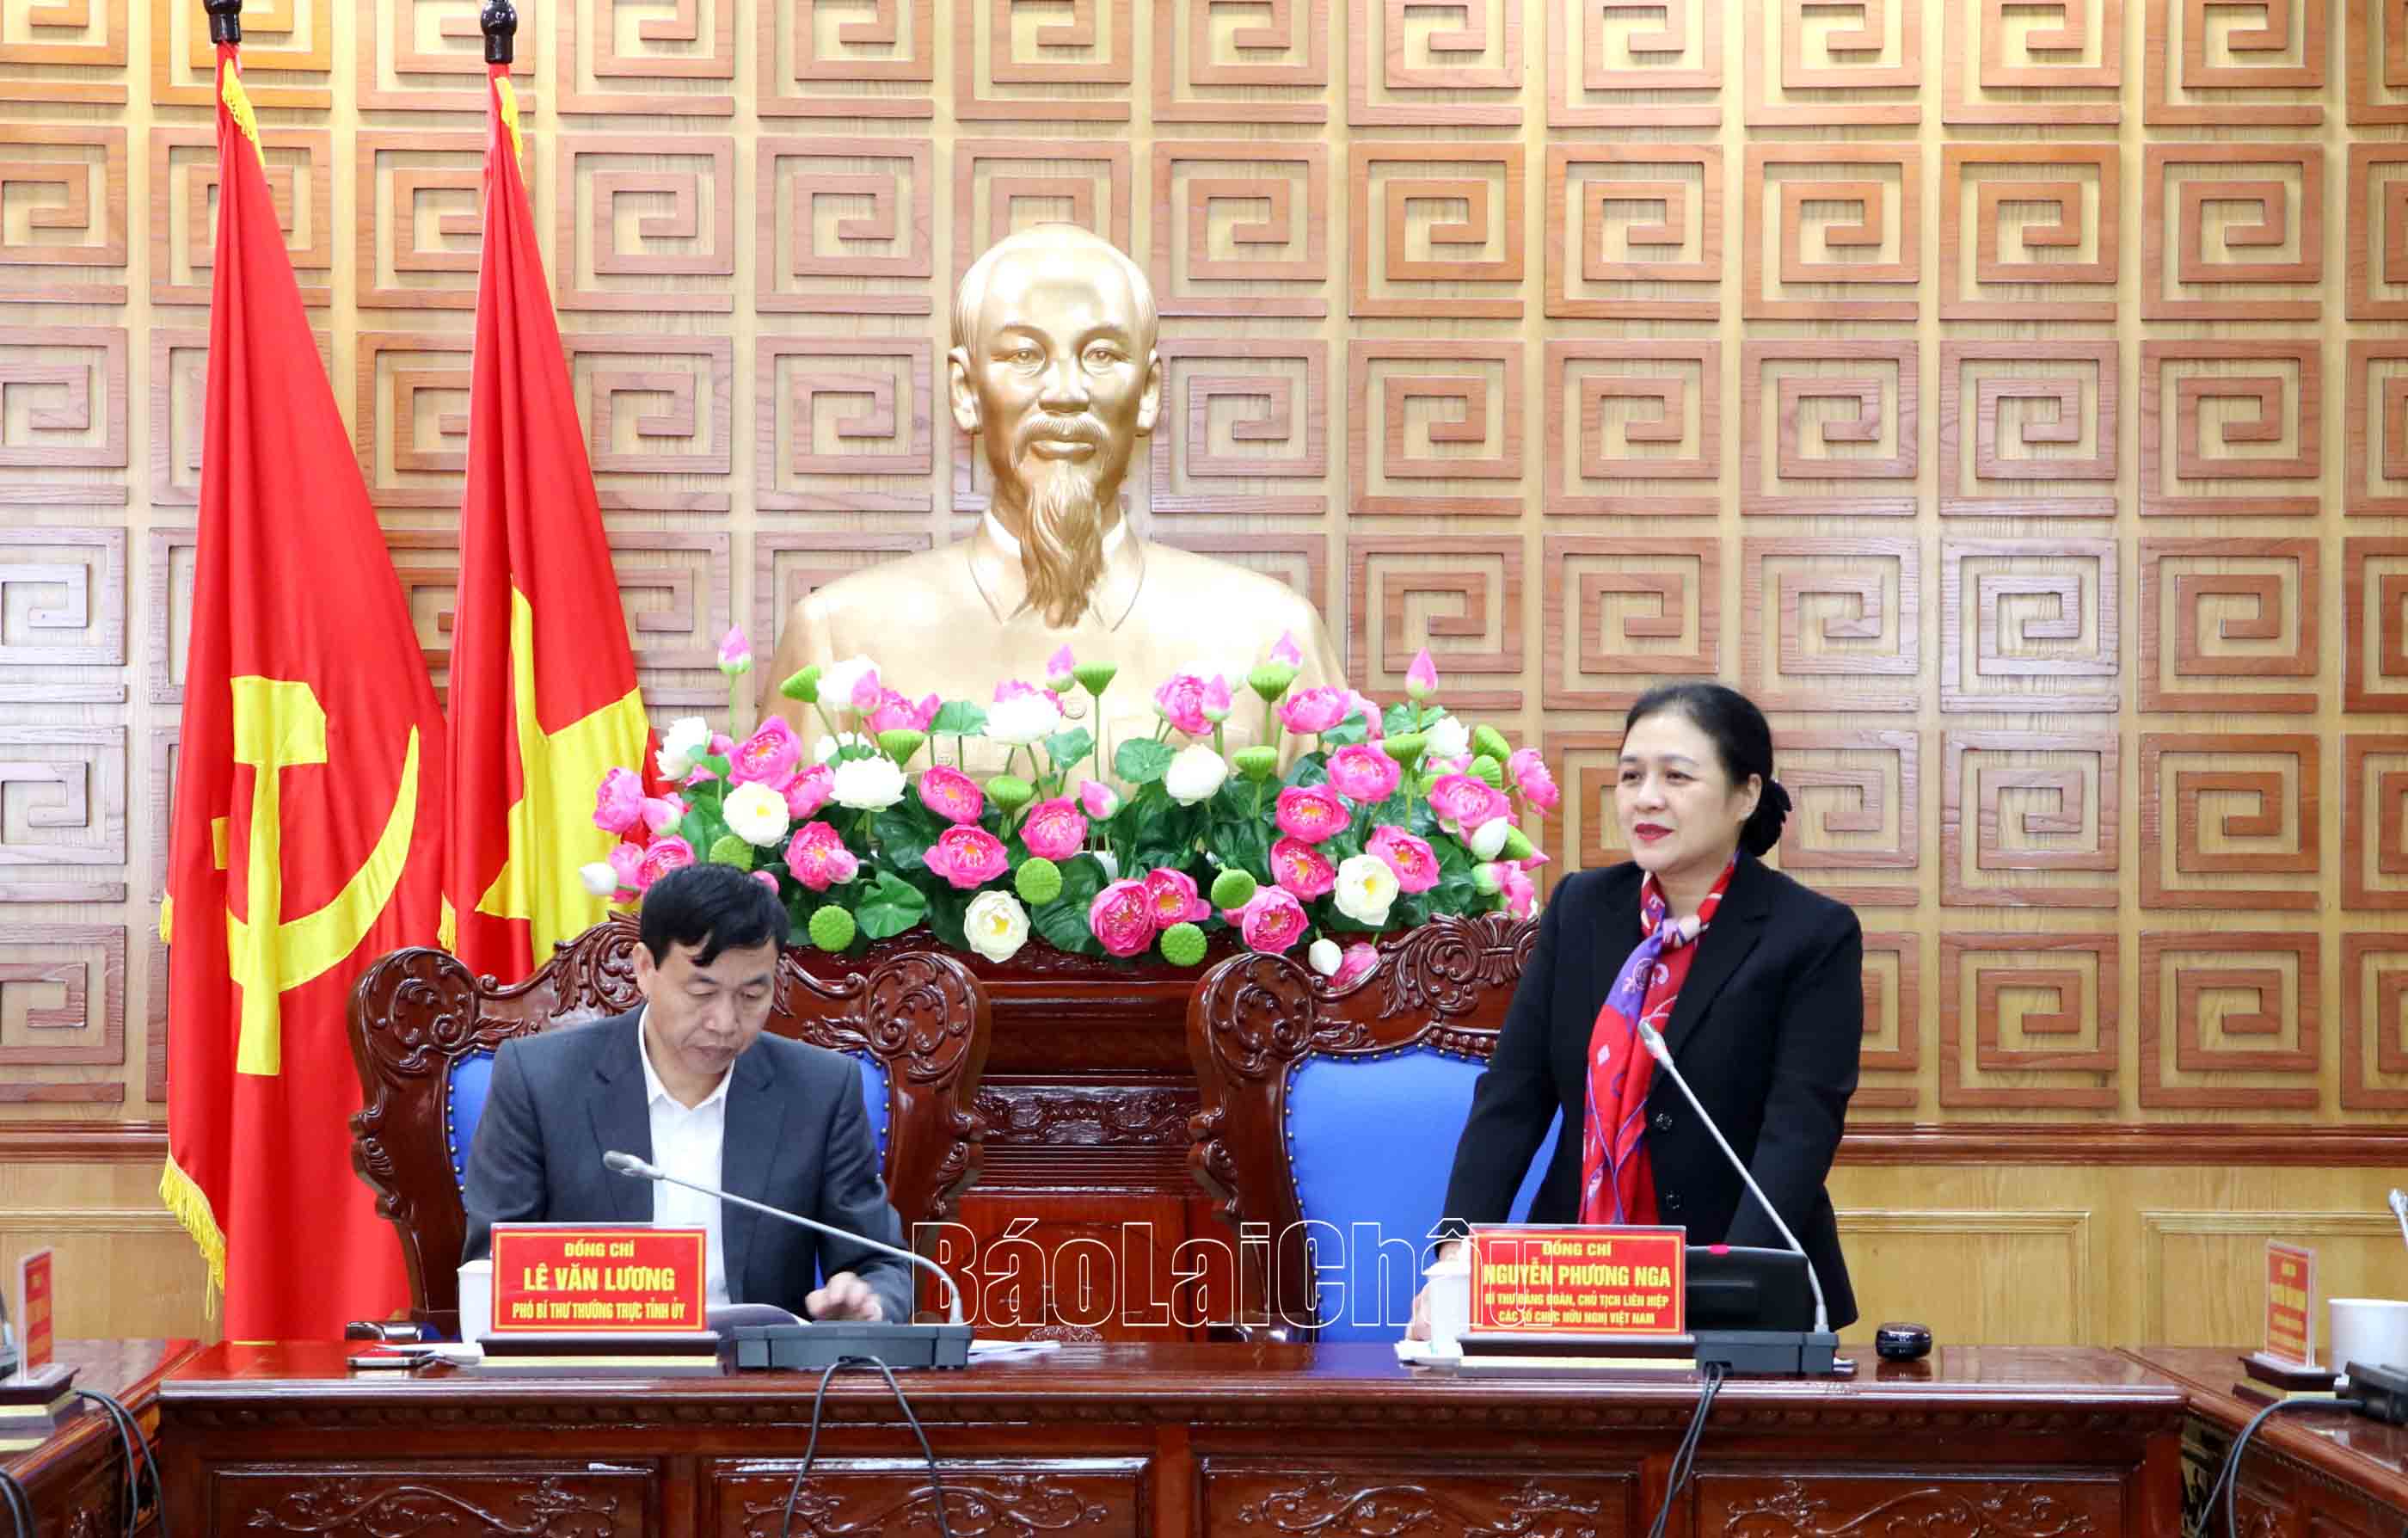 Đồng chí Nguyễn Phương Nga - Bí thư Đảng đoàn, Chủ tịch Liên hiệp các tổ chức hữu nghị Việt Nam phát biểu tại buổi làm việc.